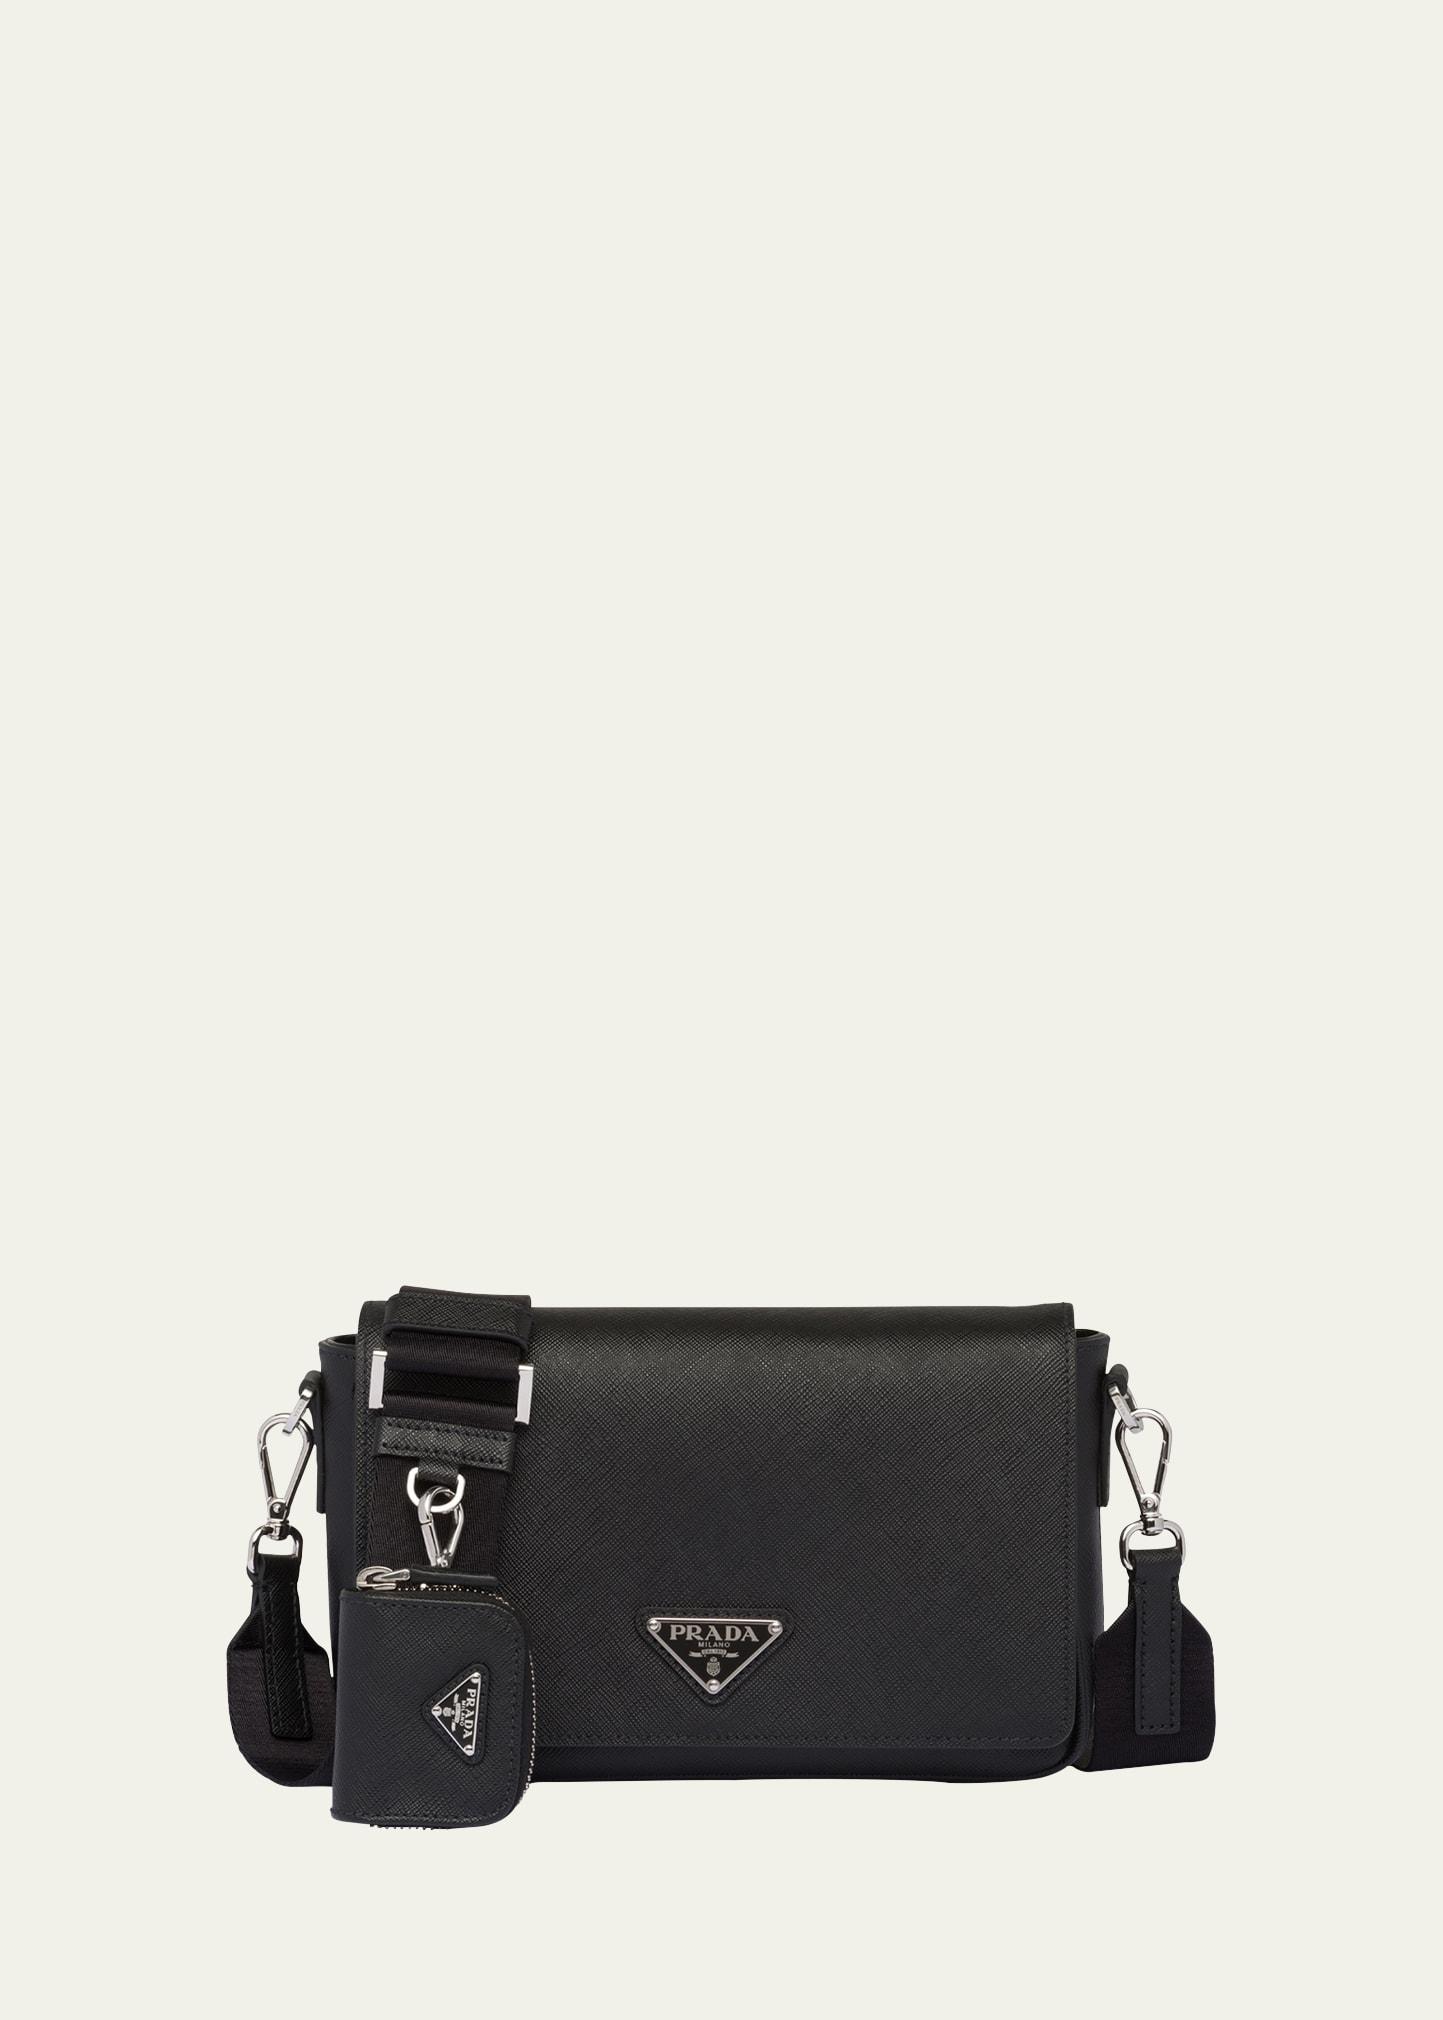 Prada Black Saffiano Leather and Nylon Logo Flap Shoulder Bag Prada